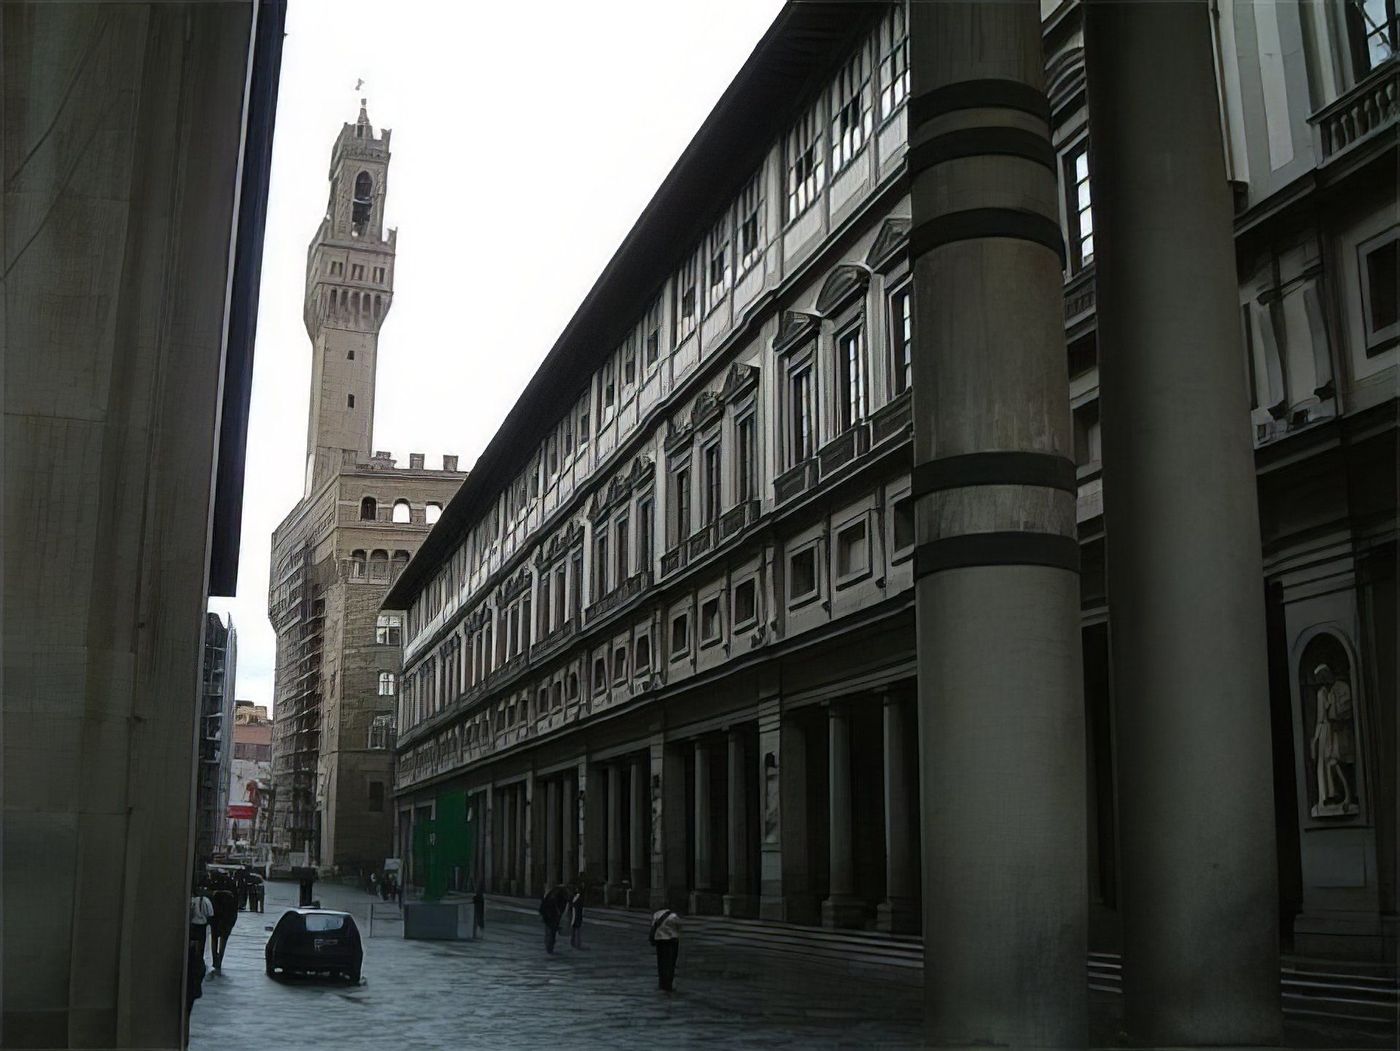 Galleria degli Uffizi (Galerie des Offices)